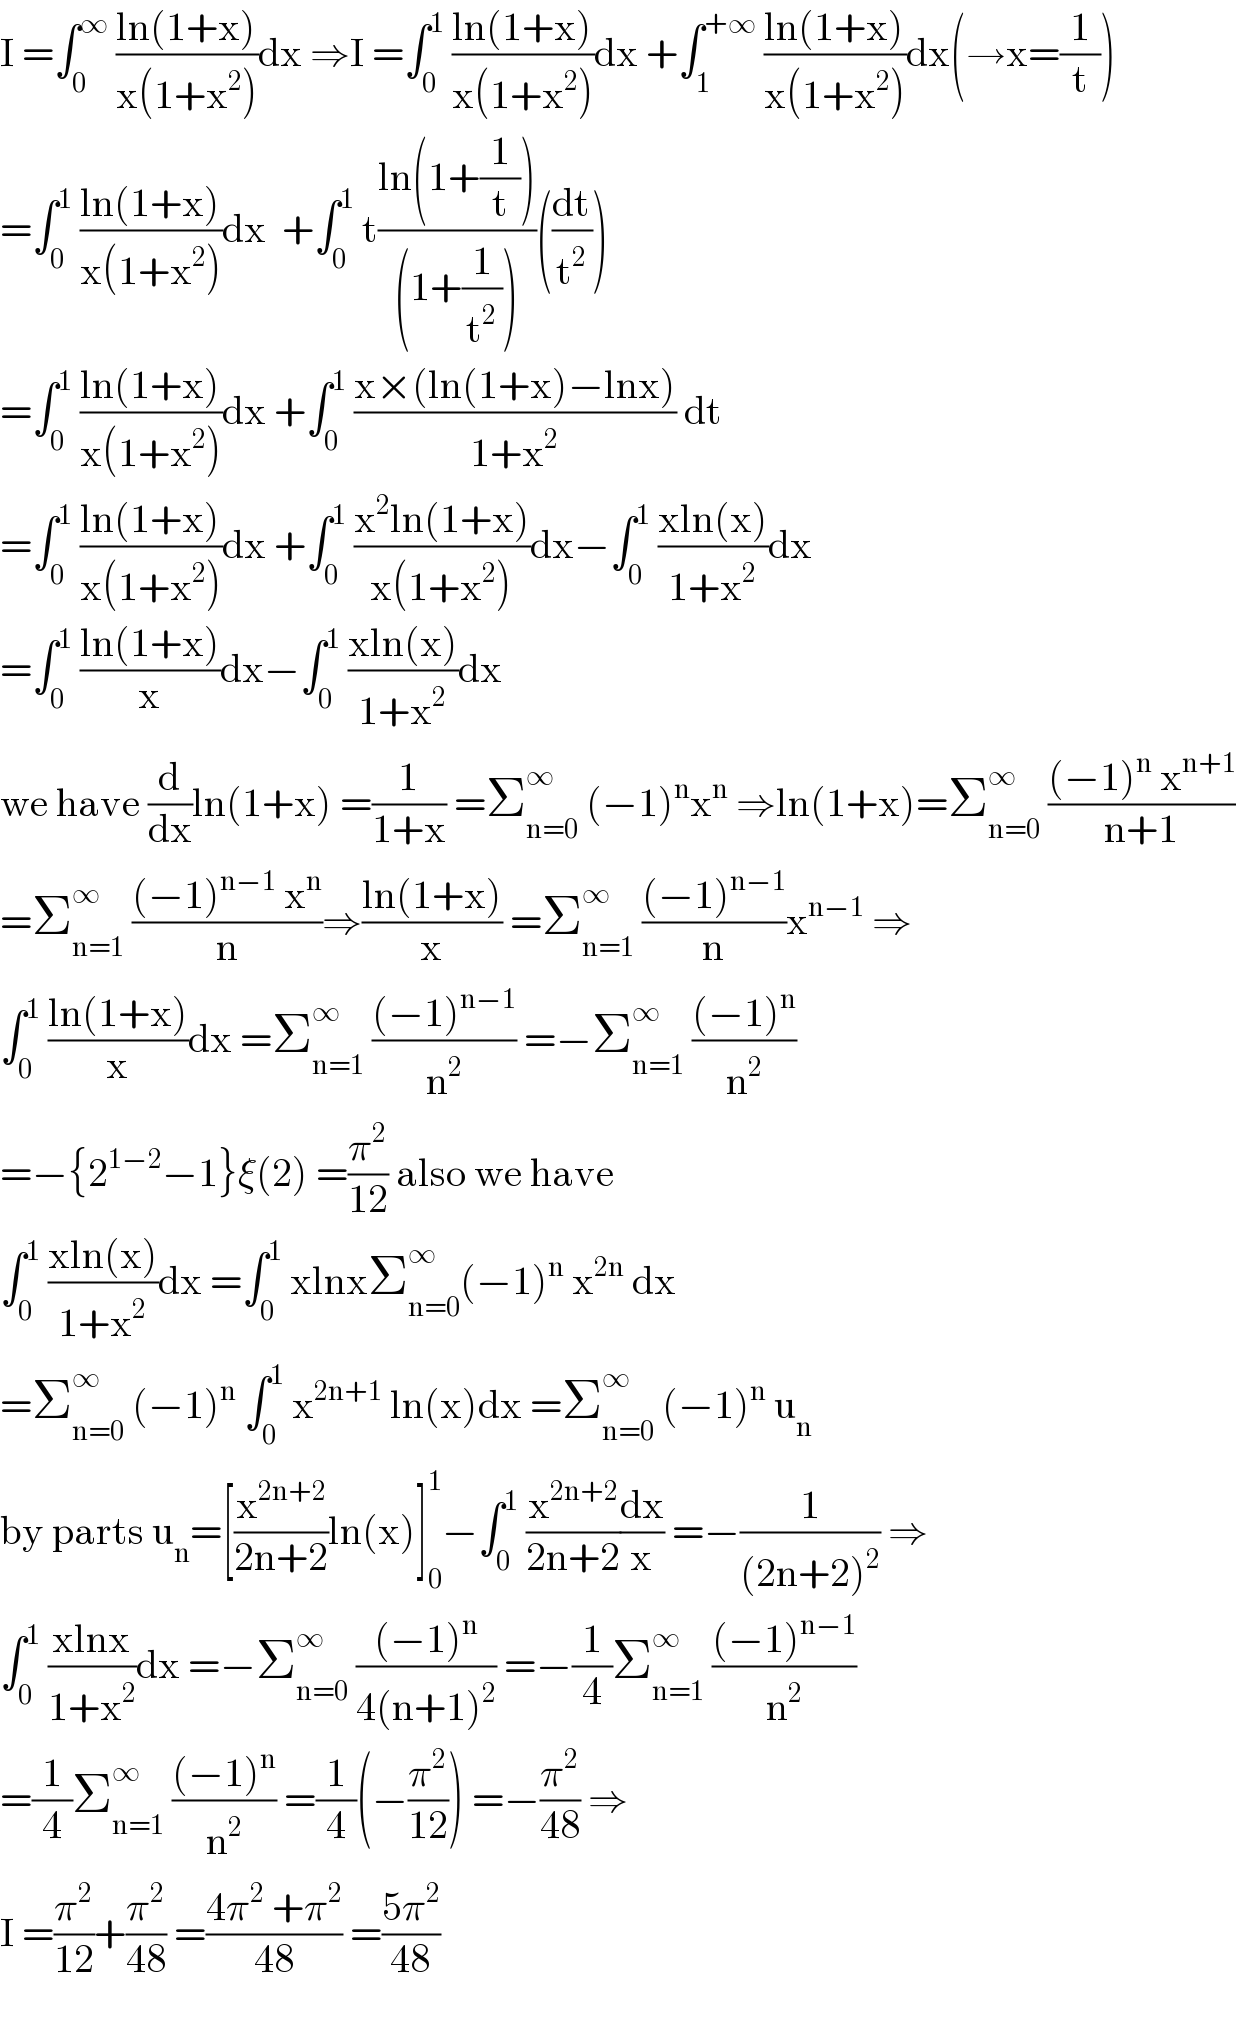 I =∫_0 ^∞  ((ln(1+x))/(x(1+x^2 )))dx ⇒I =∫_0 ^1  ((ln(1+x))/(x(1+x^2 )))dx +∫_1 ^(+∞)  ((ln(1+x))/(x(1+x^2 )))dx(→x=(1/t))  =∫_0 ^1  ((ln(1+x))/(x(1+x^2 )))dx  +∫_0 ^1  t((ln(1+(1/t)))/((1+(1/t^2 ))))((dt/t^2 ))  =∫_0 ^1  ((ln(1+x))/(x(1+x^2 )))dx +∫_0 ^1  ((x×(ln(1+x)−lnx))/(1+x^2 )) dt  =∫_0 ^1  ((ln(1+x))/(x(1+x^2 )))dx +∫_0 ^1  ((x^2 ln(1+x))/(x(1+x^2 )))dx−∫_0 ^1  ((xln(x))/(1+x^2 ))dx  =∫_0 ^1  ((ln(1+x))/x)dx−∫_0 ^1  ((xln(x))/(1+x^2 ))dx  we have (d/dx)ln(1+x) =(1/(1+x)) =Σ_(n=0) ^∞  (−1)^n x^n  ⇒ln(1+x)=Σ_(n=0) ^∞  (((−1)^n  x^(n+1) )/(n+1))  =Σ_(n=1) ^∞  (((−1)^(n−1)  x^n )/n)⇒((ln(1+x))/x) =Σ_(n=1) ^∞  (((−1)^(n−1) )/n)x^(n−1)  ⇒  ∫_0 ^1  ((ln(1+x))/x)dx =Σ_(n=1) ^∞  (((−1)^(n−1) )/n^2 ) =−Σ_(n=1) ^∞  (((−1)^n )/n^2 )  =−{2^(1−2) −1}ξ(2) =(π^2 /(12)) also we have  ∫_0 ^1  ((xln(x))/(1+x^2 ))dx =∫_0 ^1  xlnxΣ_(n=0) ^∞ (−1)^n  x^(2n)  dx  =Σ_(n=0) ^∞  (−1)^n  ∫_0 ^1  x^(2n+1)  ln(x)dx =Σ_(n=0) ^∞  (−1)^n  u_n   by parts u_n =[(x^(2n+2) /(2n+2))ln(x)]_0 ^1 −∫_0 ^1  (x^(2n+2) /(2n+2))(dx/x) =−(1/((2n+2)^2 )) ⇒  ∫_0 ^1  ((xlnx)/(1+x^2 ))dx =−Σ_(n=0) ^∞  (((−1)^n )/(4(n+1)^2 )) =−(1/4)Σ_(n=1) ^∞  (((−1)^(n−1) )/n^2 )  =(1/4)Σ_(n=1) ^∞  (((−1)^n )/n^2 ) =(1/4)(−(π^2 /(12))) =−(π^2 /(48)) ⇒  I =(π^2 /(12))+(π^2 /(48)) =((4π^2  +π^2 )/(48)) =((5π^2 )/(48))    